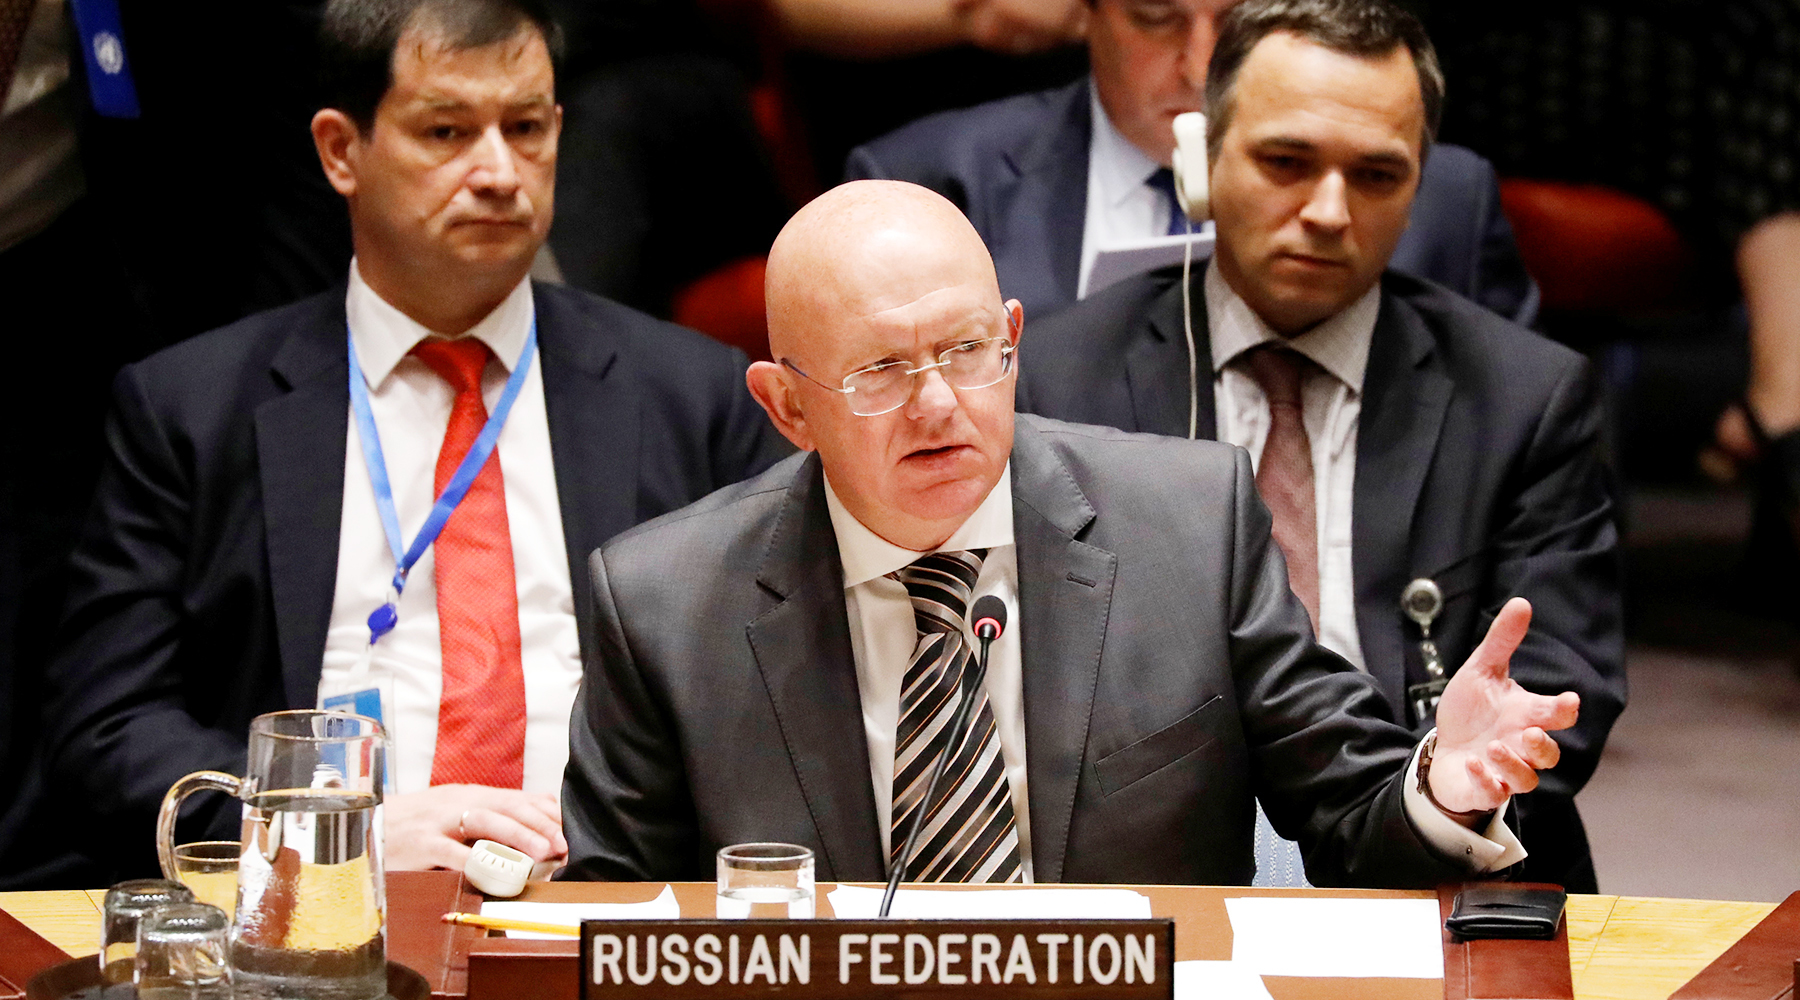 Борьба резолюций: почему США обвинили Россию и Китай в срыве гуманитарного снабжения Сирии